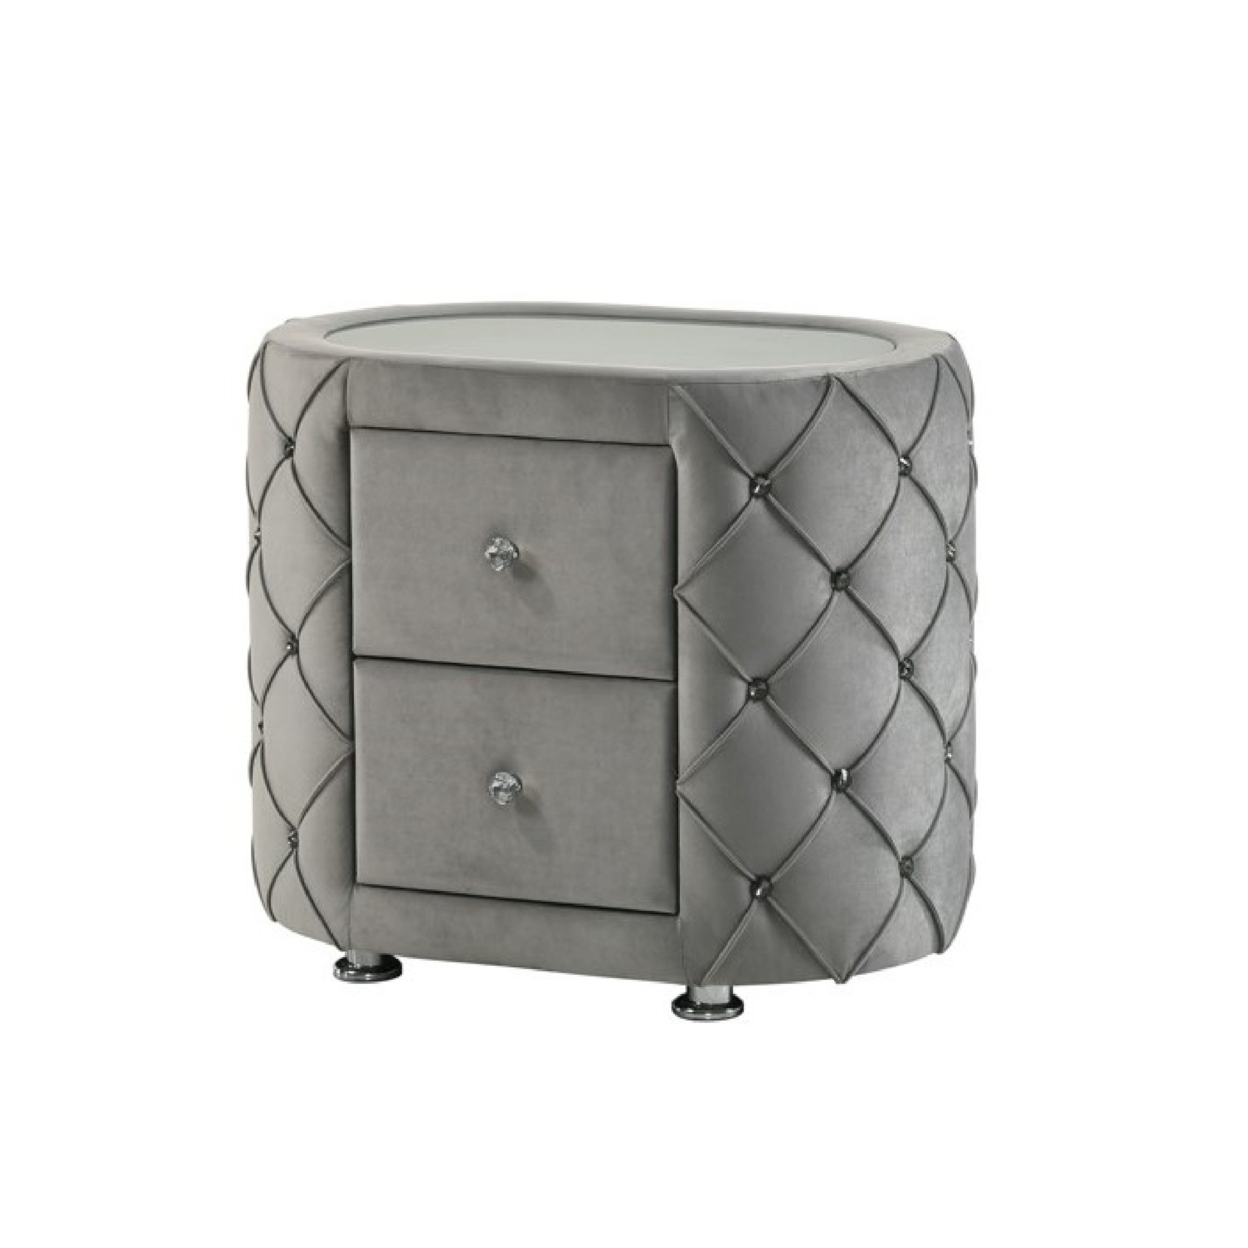 Jill 29 Inch Oval Nightstand, Tufted Velvet Upholstery, 2 Drawers, Grey- Saltoro Sherpi